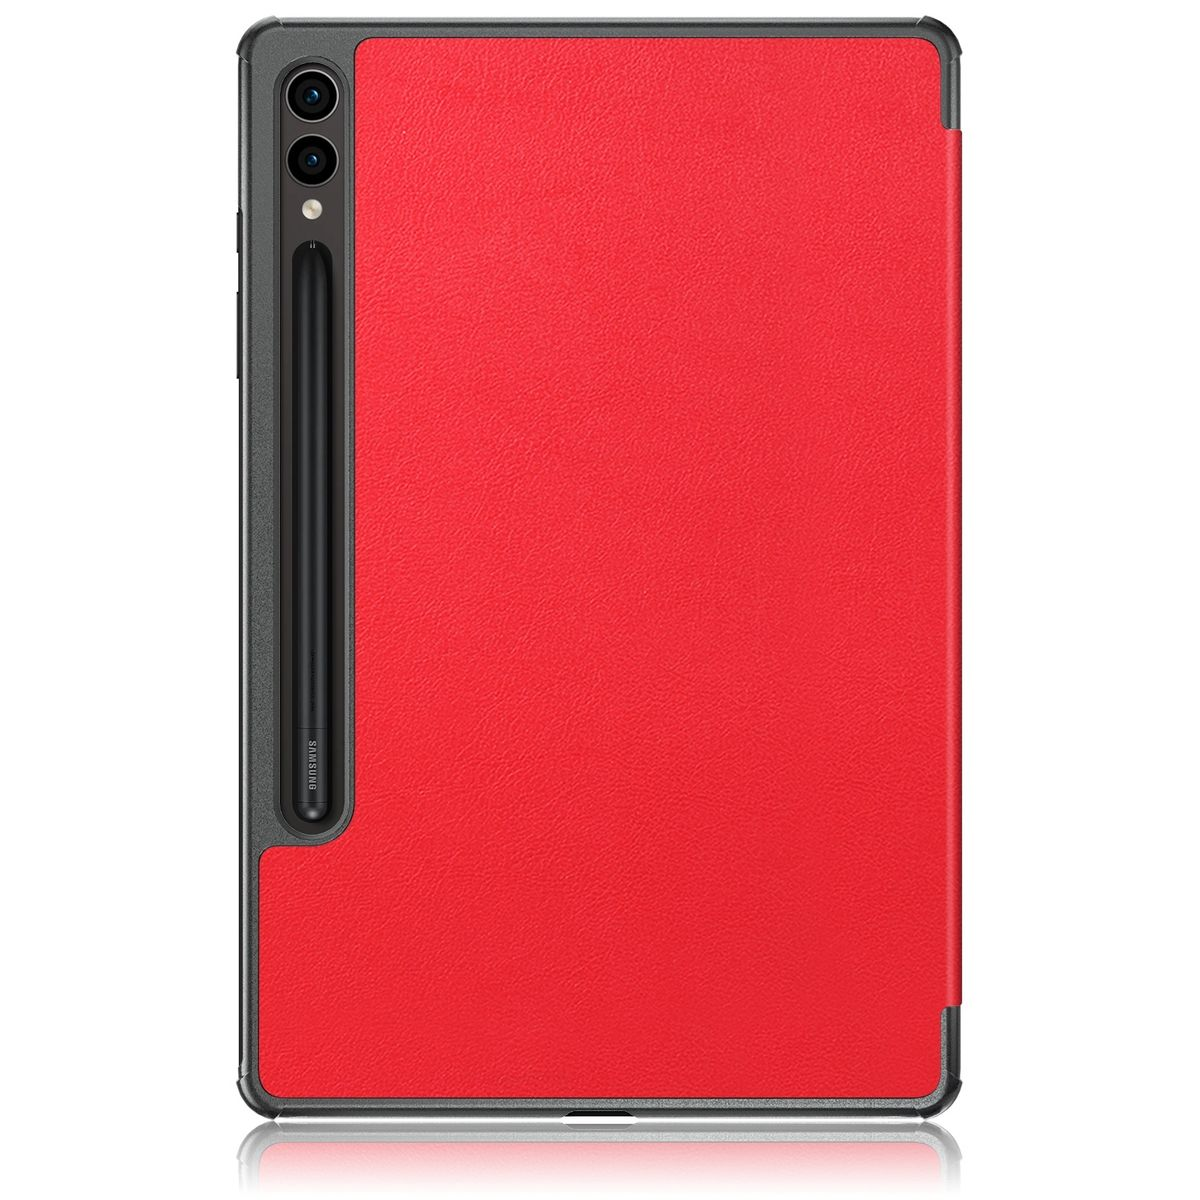 WIGENTO 3folt Wake / Kunststoff Samsung für Rot Tablethülle Kunstleder, / Silikon aufstellbar Cover Sleep Cover UP & Full Smart